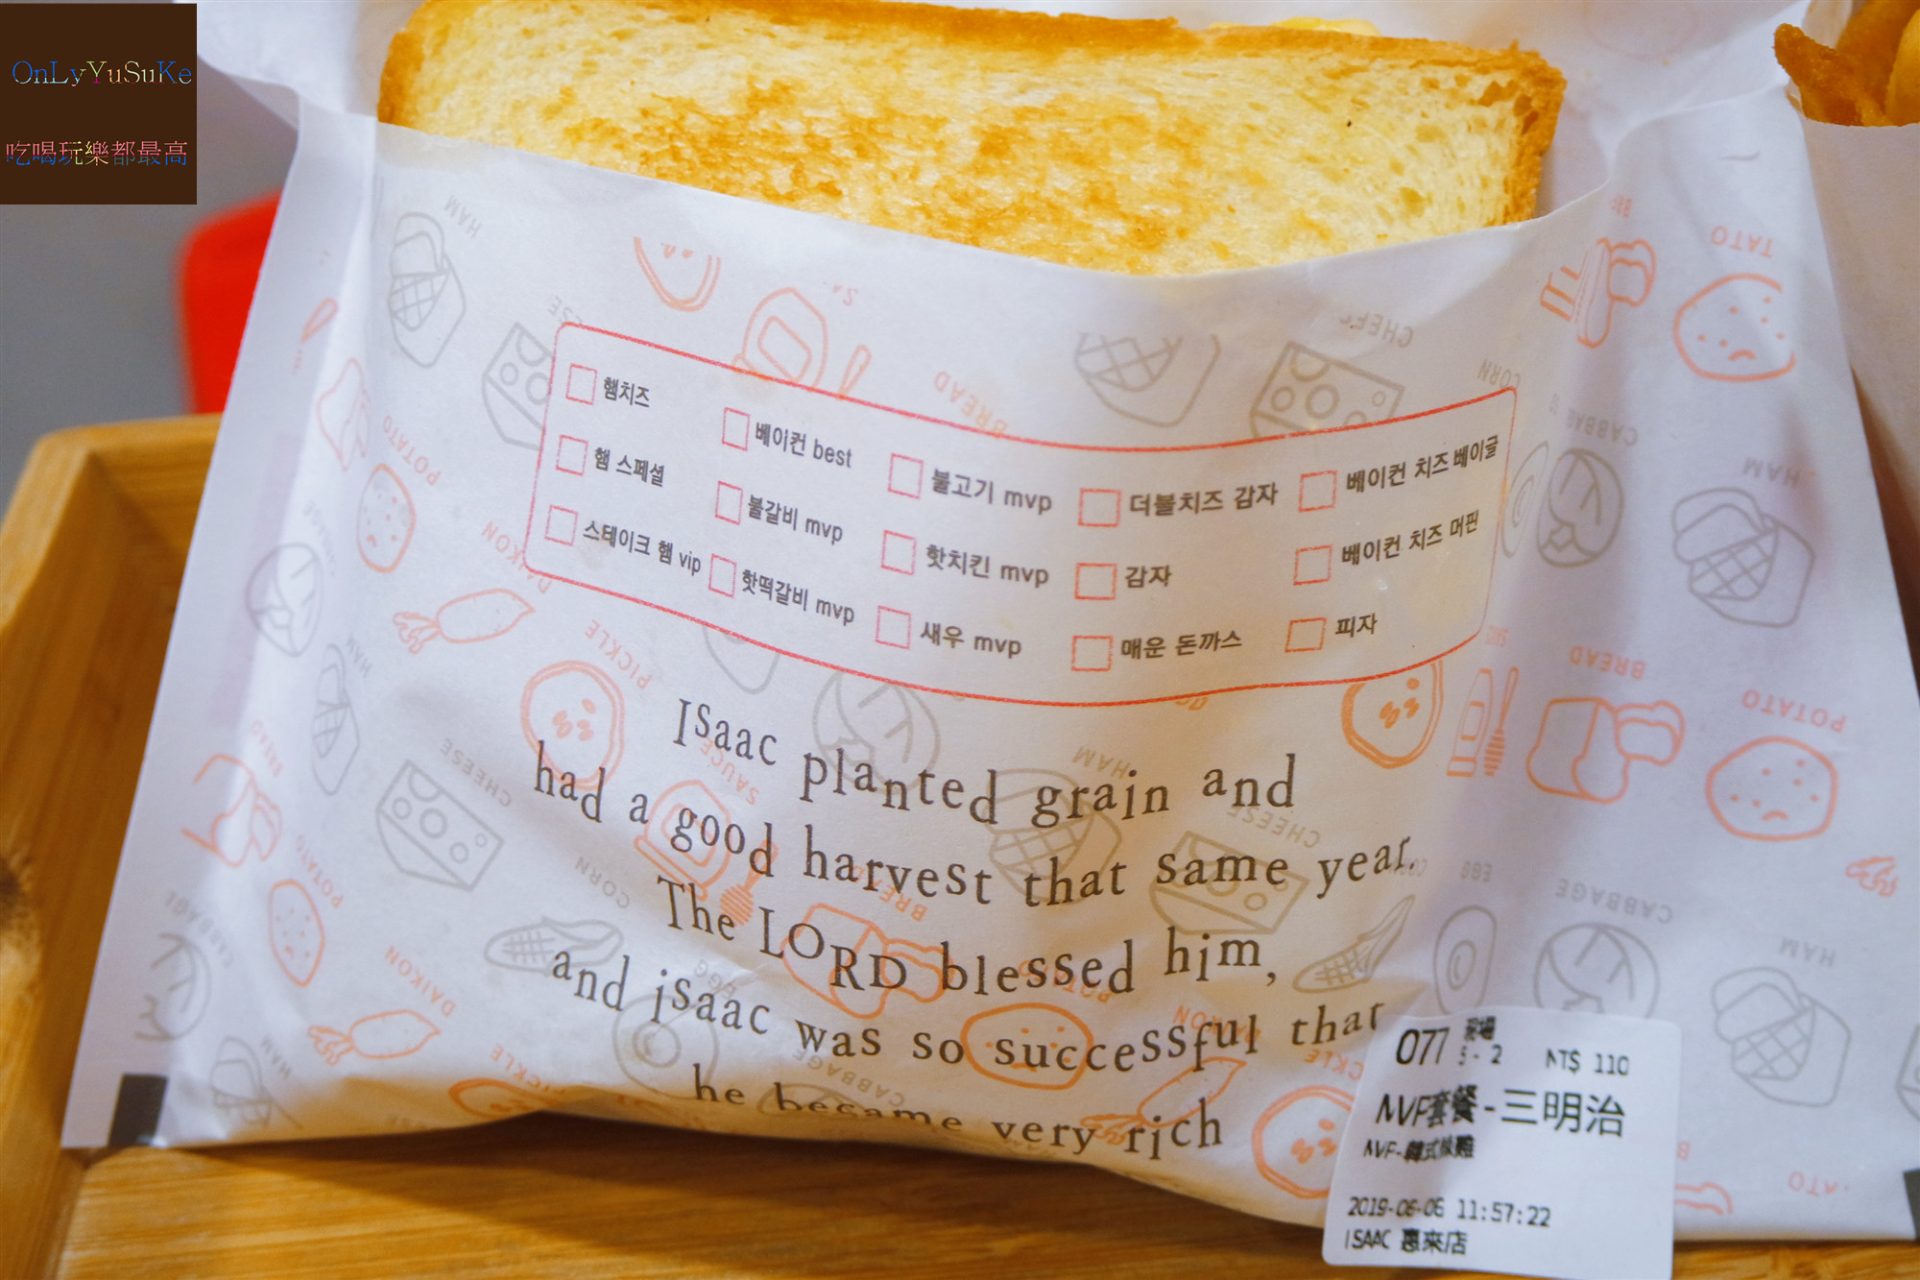 【ISAAC Toast & Coffee 台中惠來店】韓國國民早餐,重視早餐的你必吃